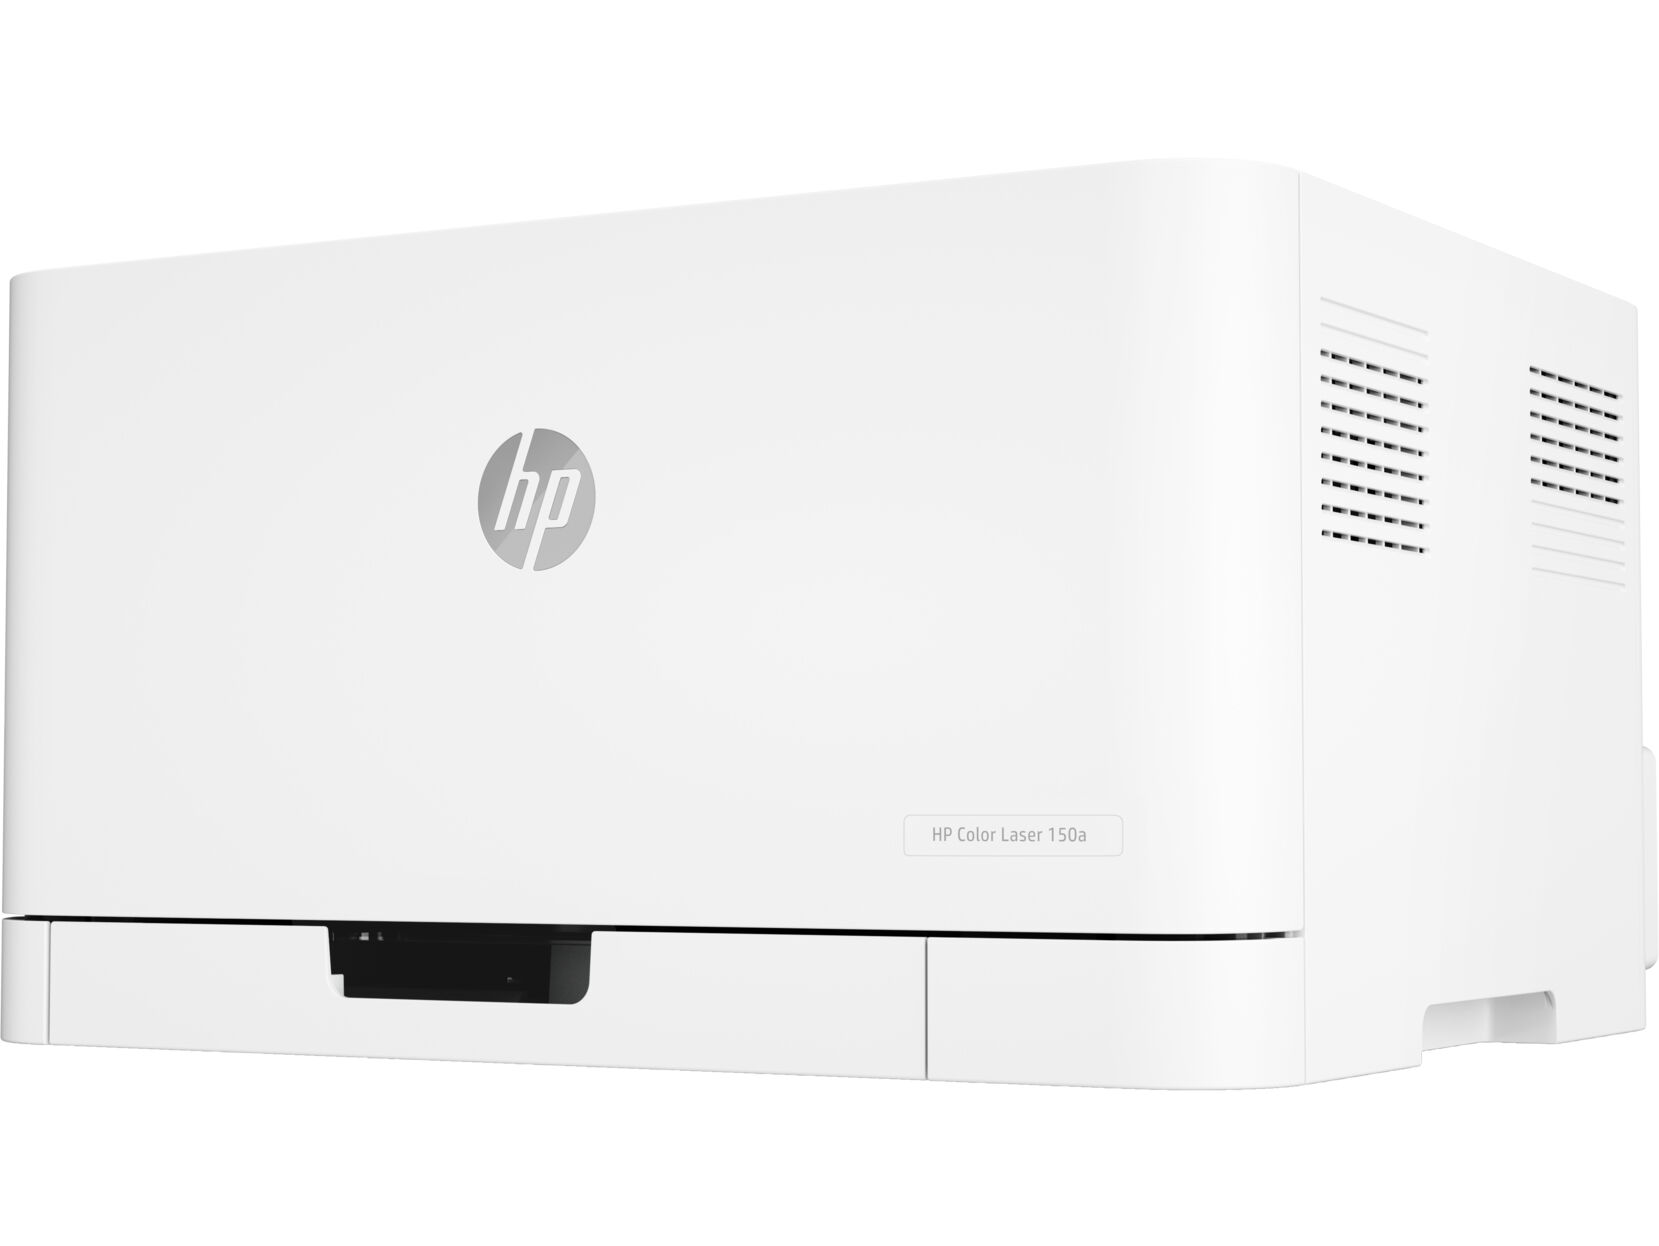 Принтер HP HP Color Laser 150nw 4ZB95A/A4 цветной/печать Лазерный 600x600dpi 18стр.мин/Wi-Fi Сетевой интерфейс (RJ-45)